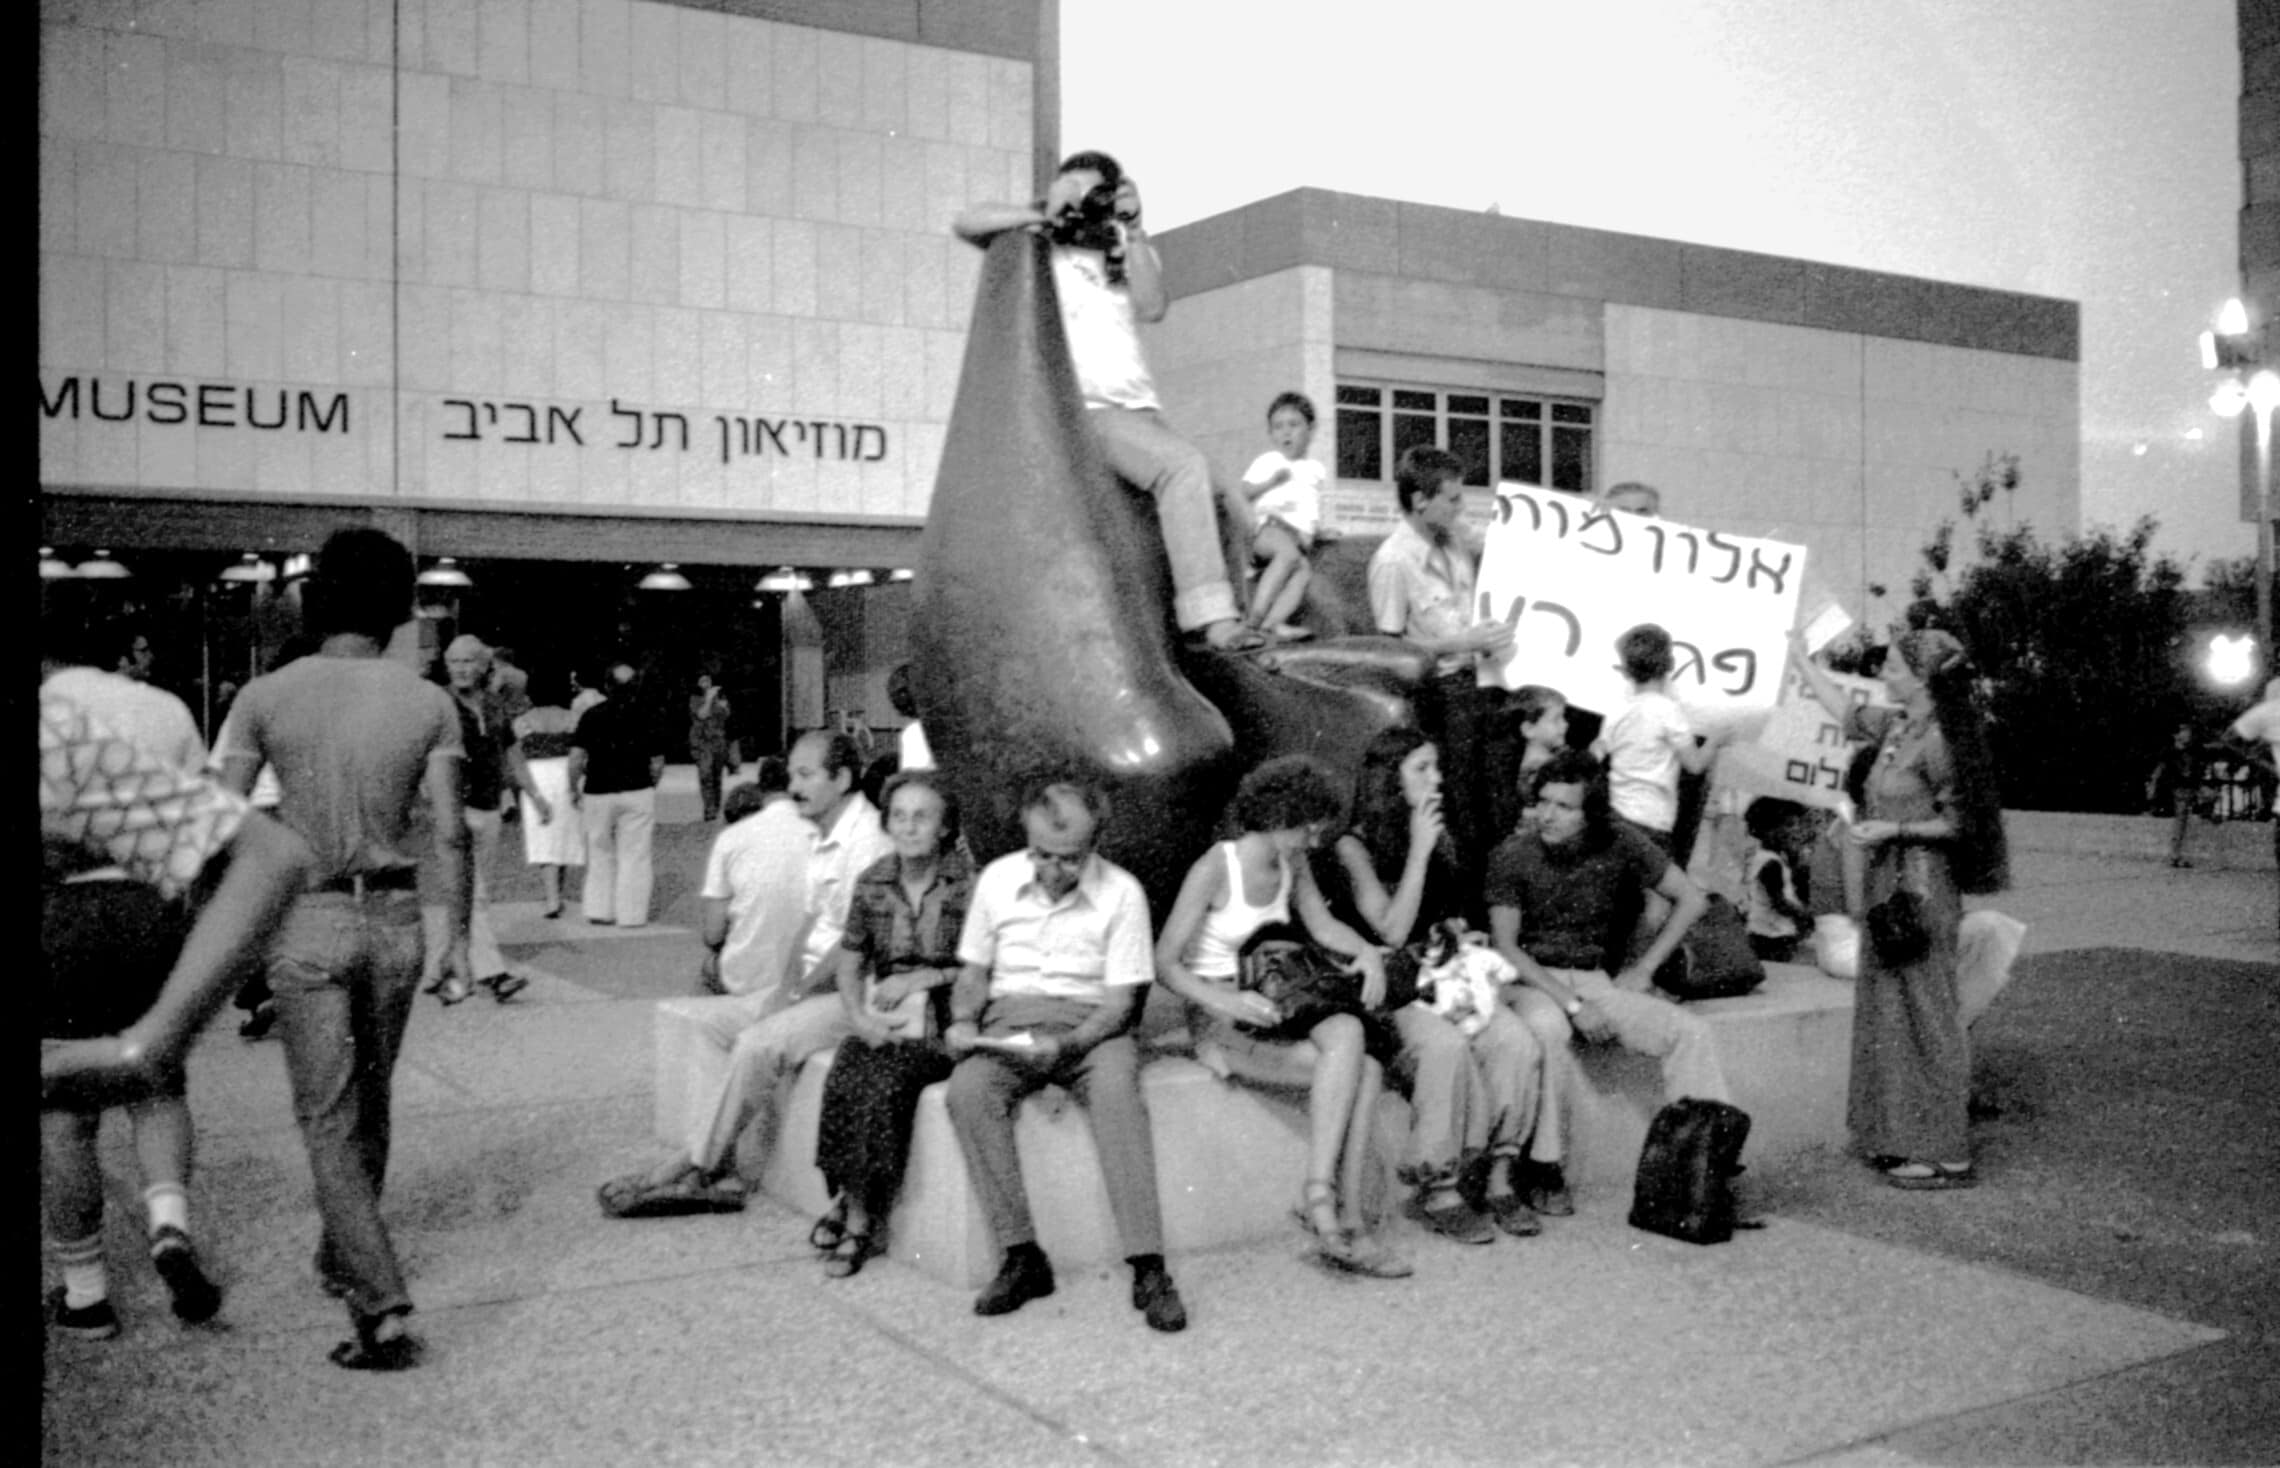 הפגנה. רחבת מוזיאון תל אביב, הפגנה נגד &quot;גוש אמונים&quot;, 1981 (צילום: יוסף הוכמן, ארכיון יד יערי)